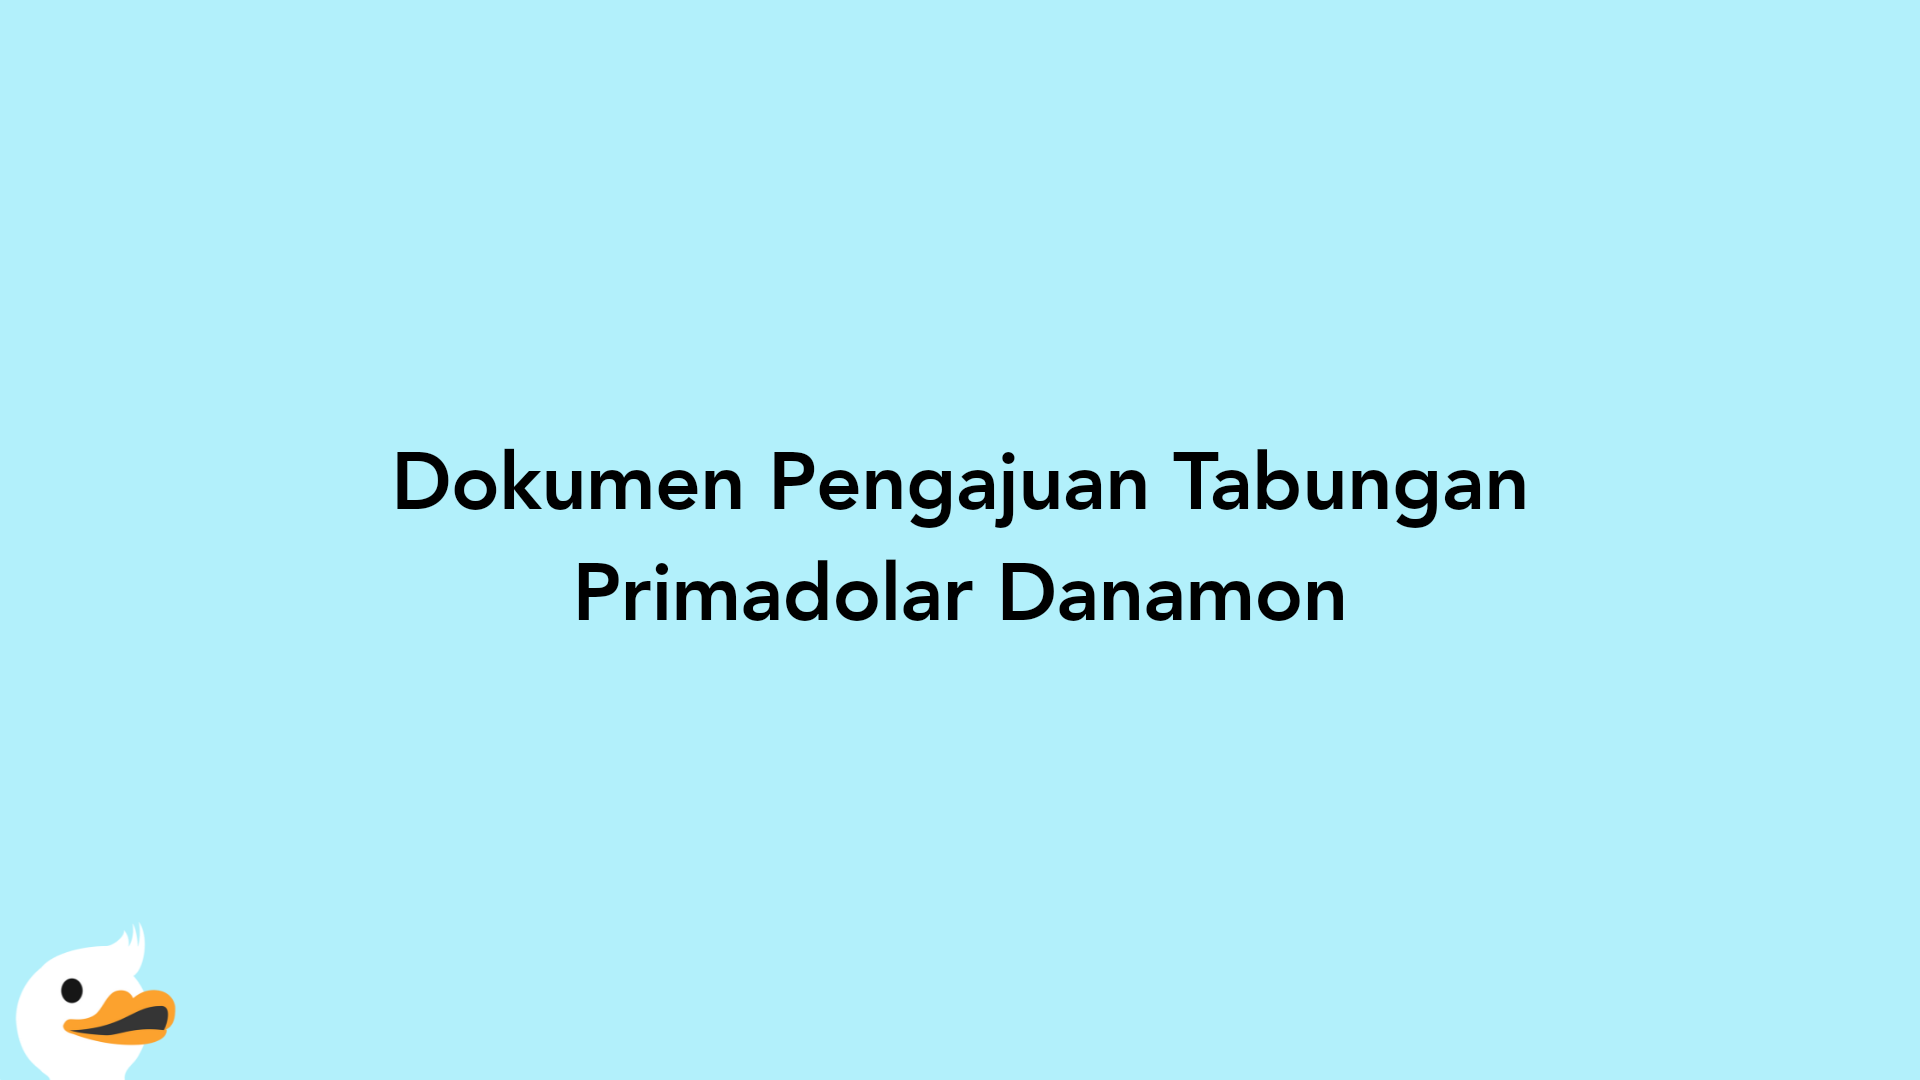 Dokumen Pengajuan Tabungan Primadolar Danamon